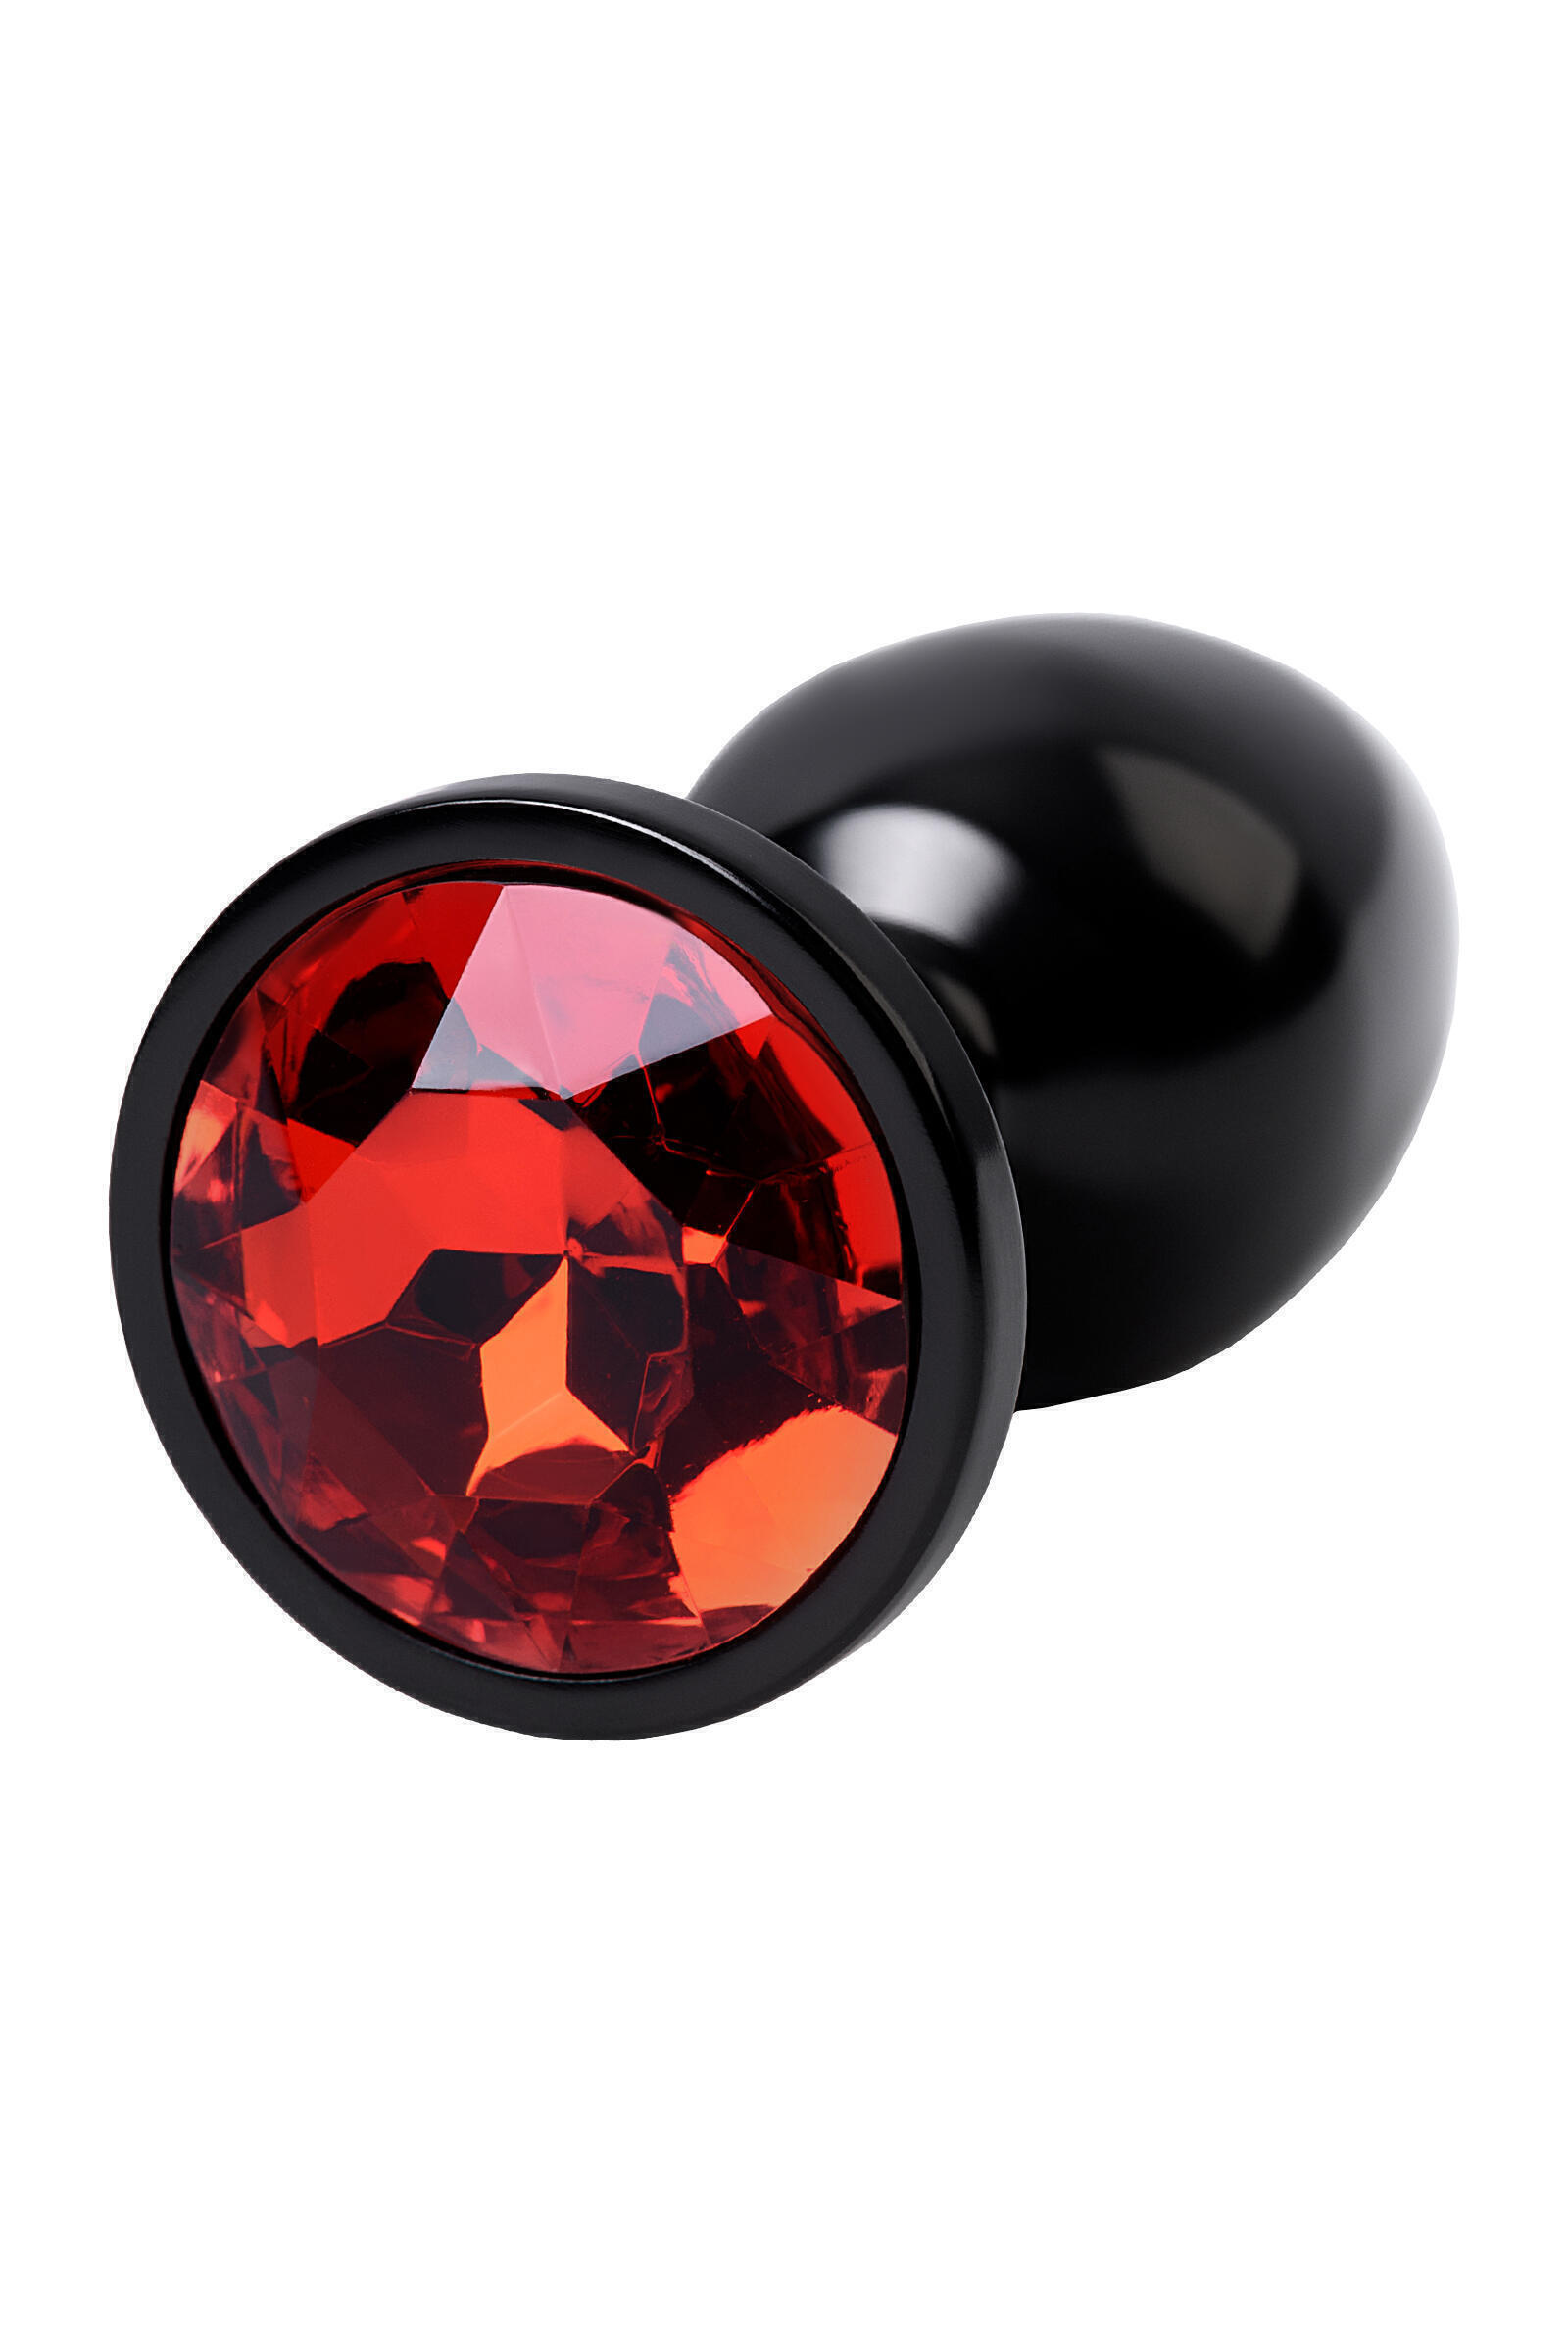 Анальная пробка Toyfa Metal с кристалом цвета рубин, 7,2 см, черный